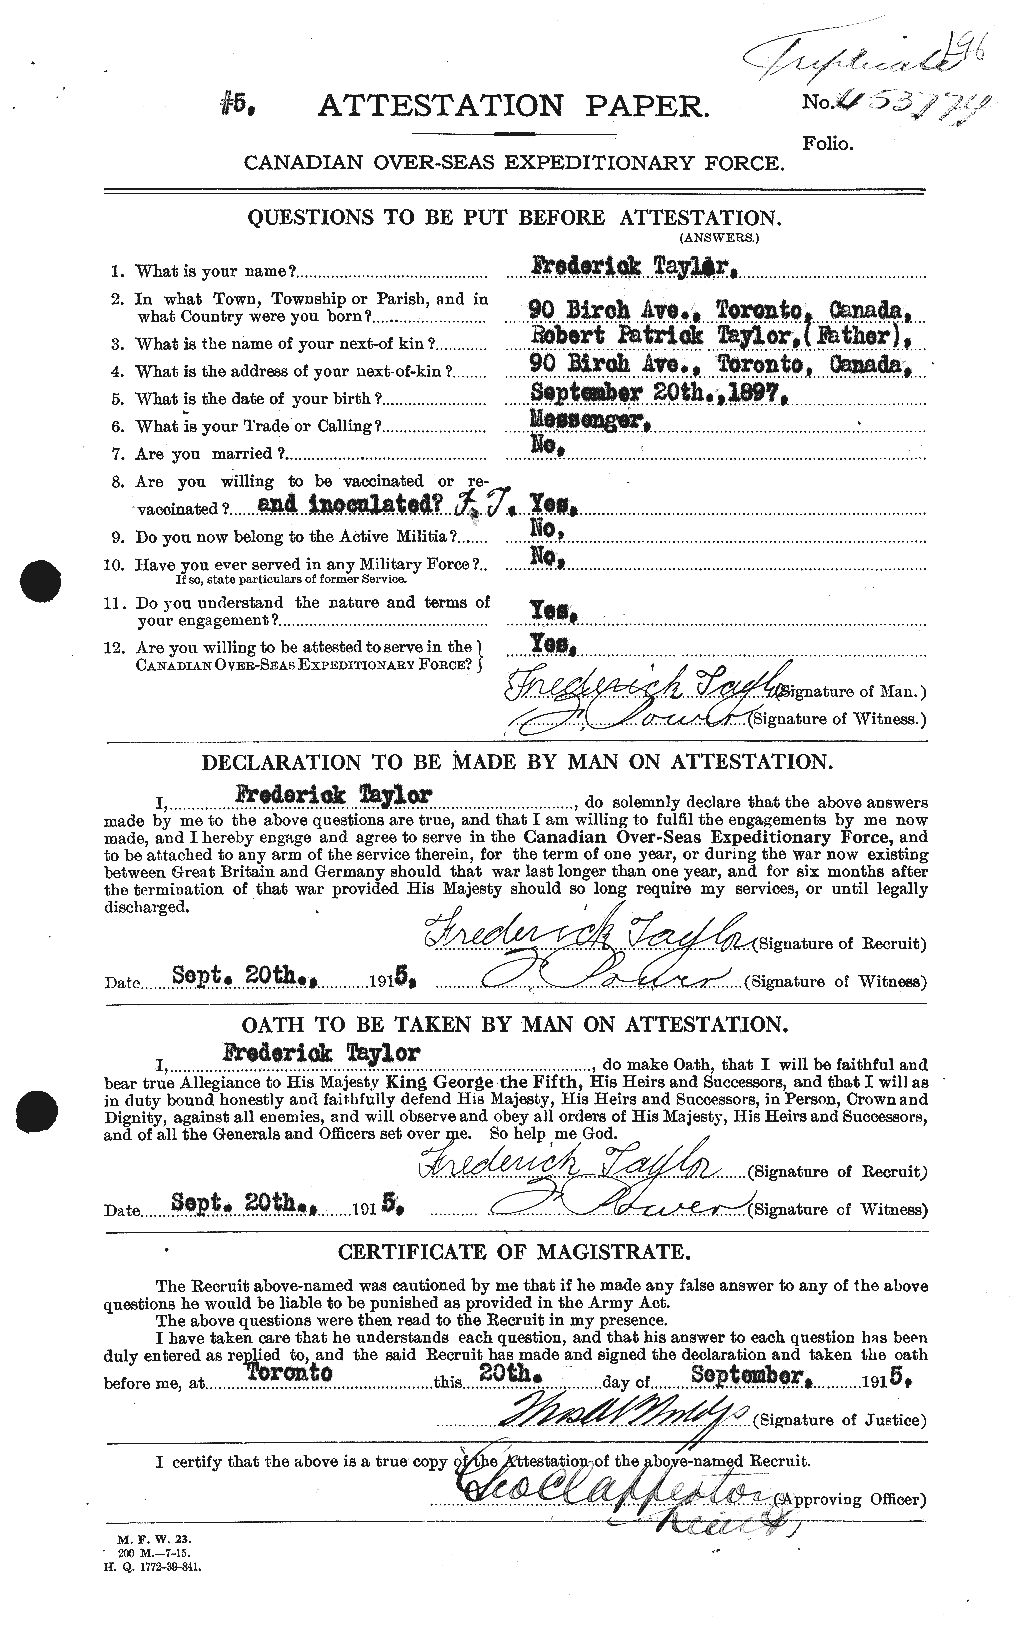 Dossiers du Personnel de la Première Guerre mondiale - CEC 625776a